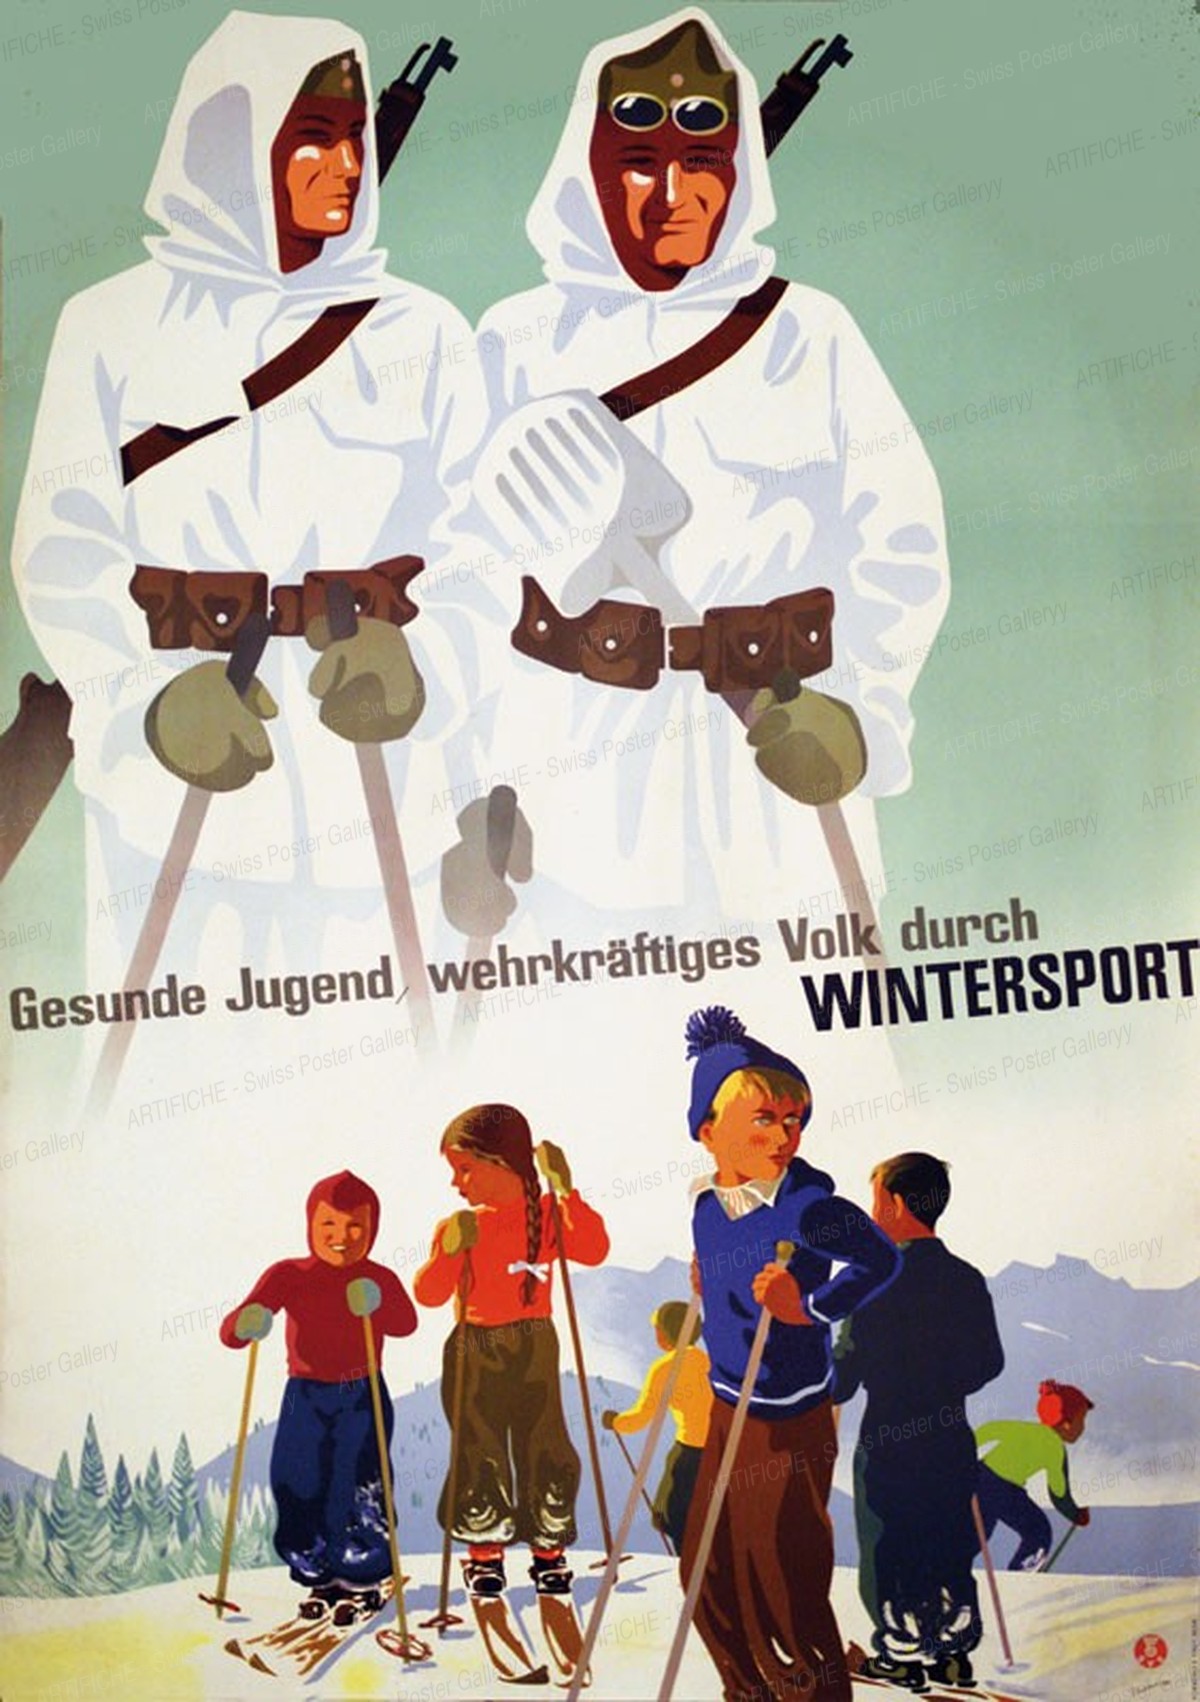 Gesunde Jugend, wehrkräftiges Volk durch Wintersport, Hans Thöni